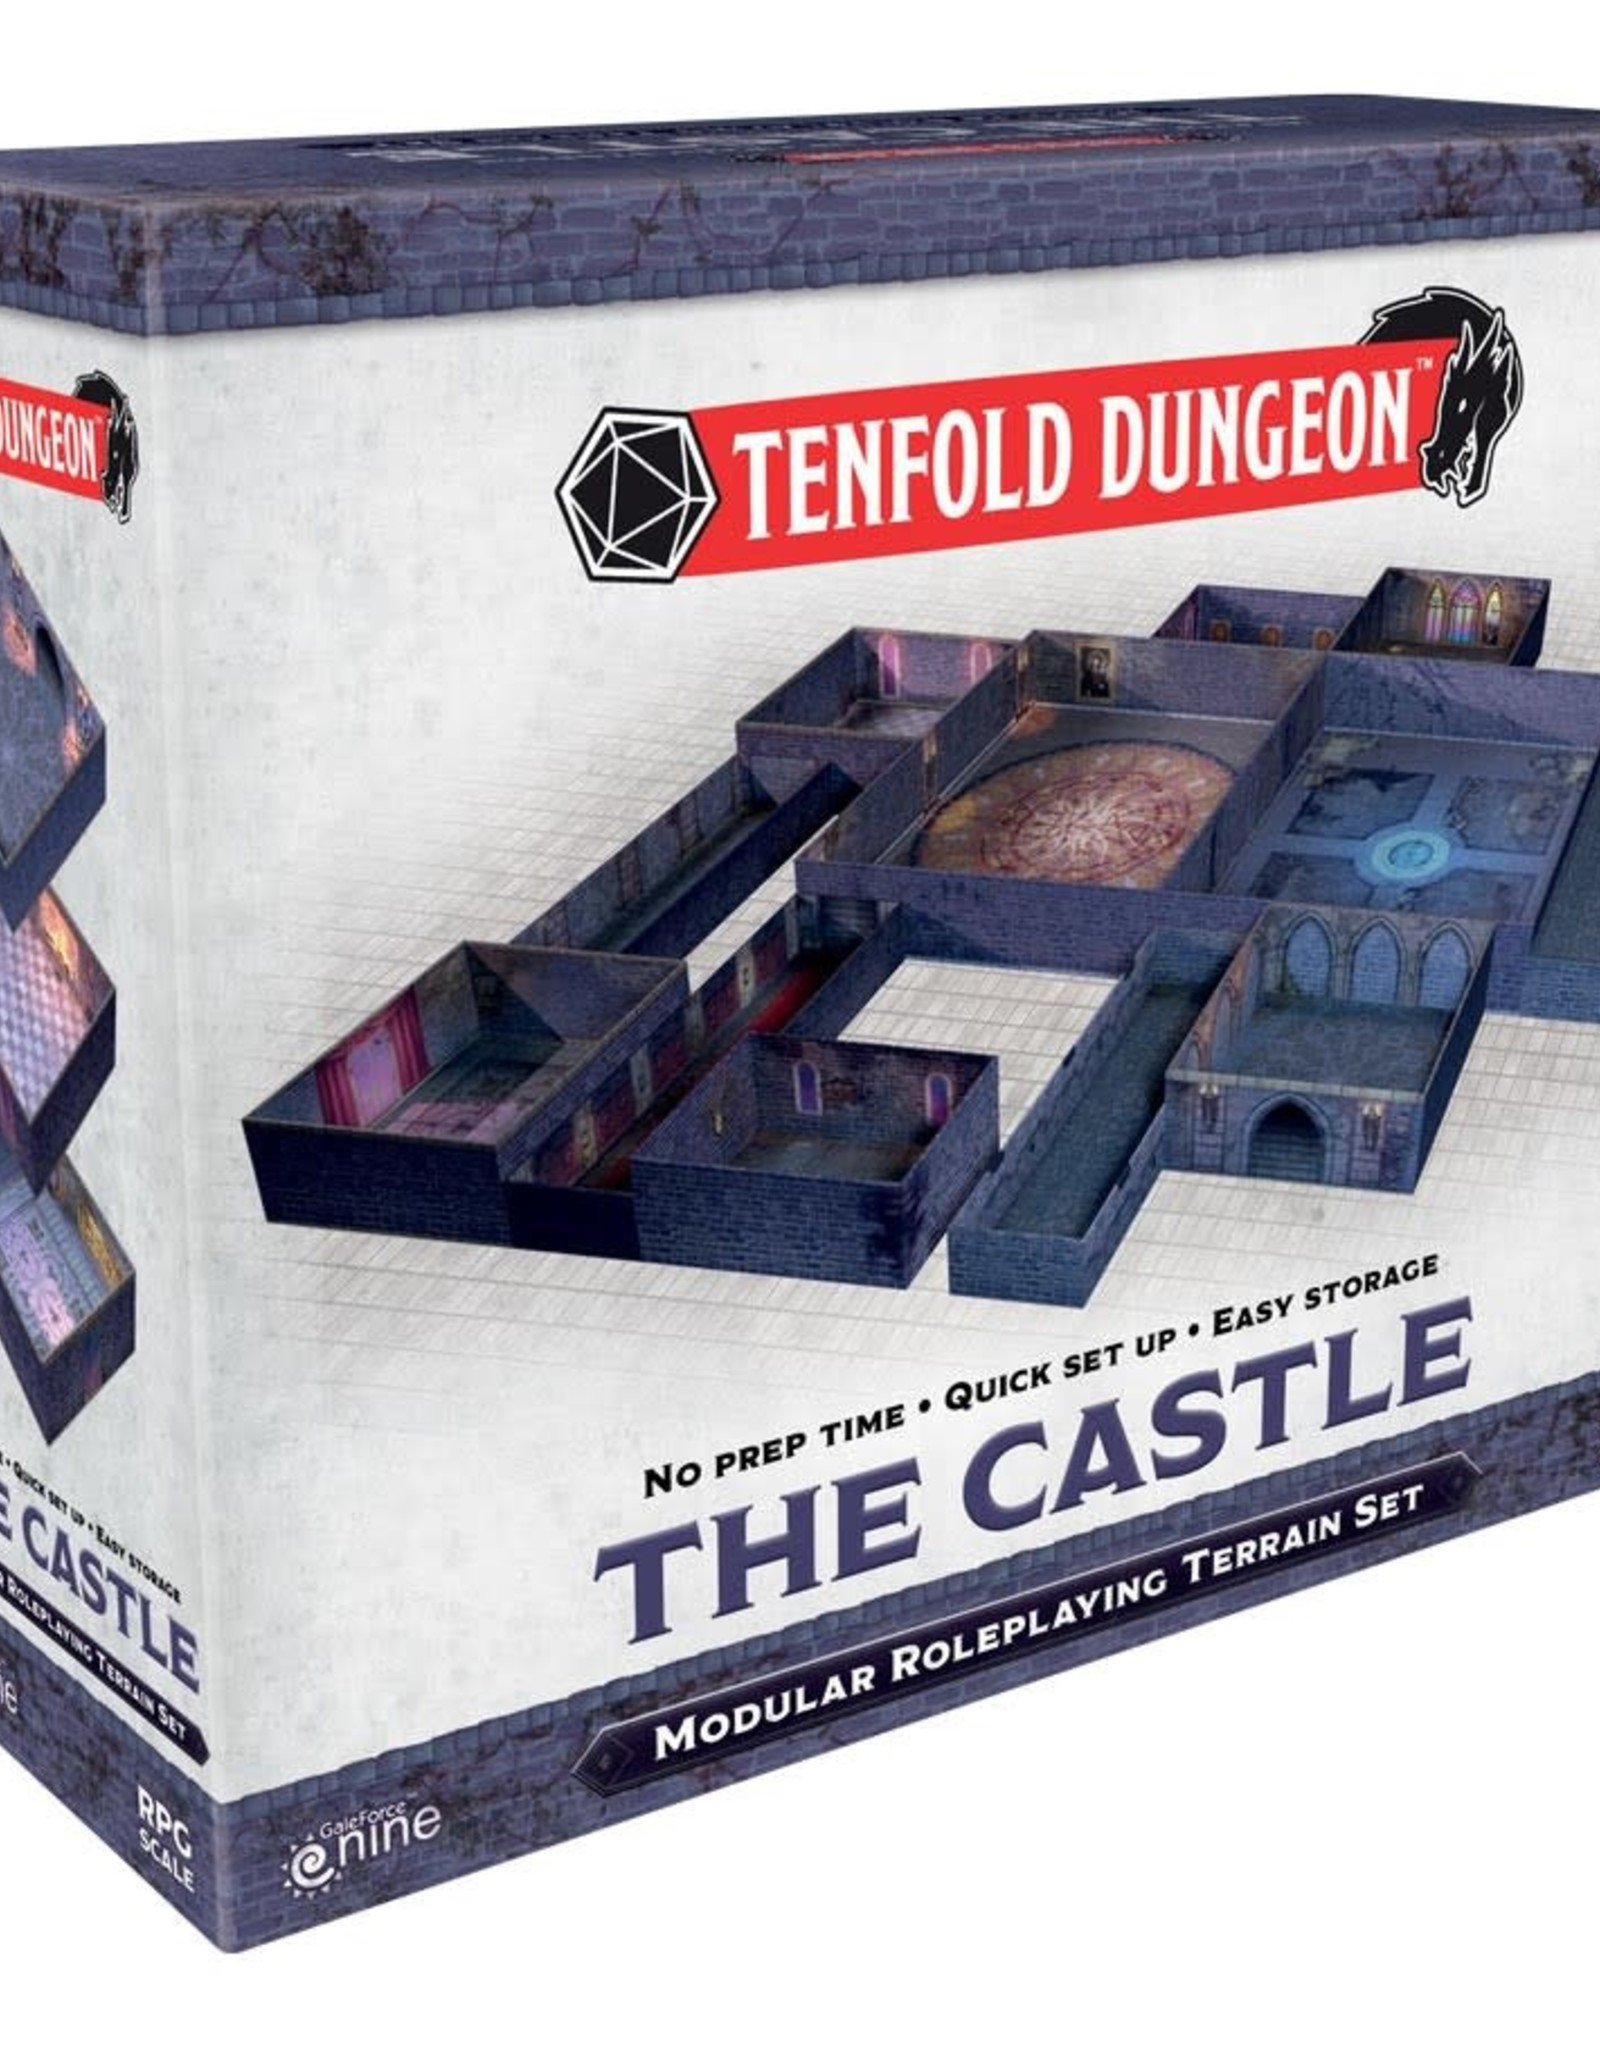 Tenfold Dungeon: The Castle - EN